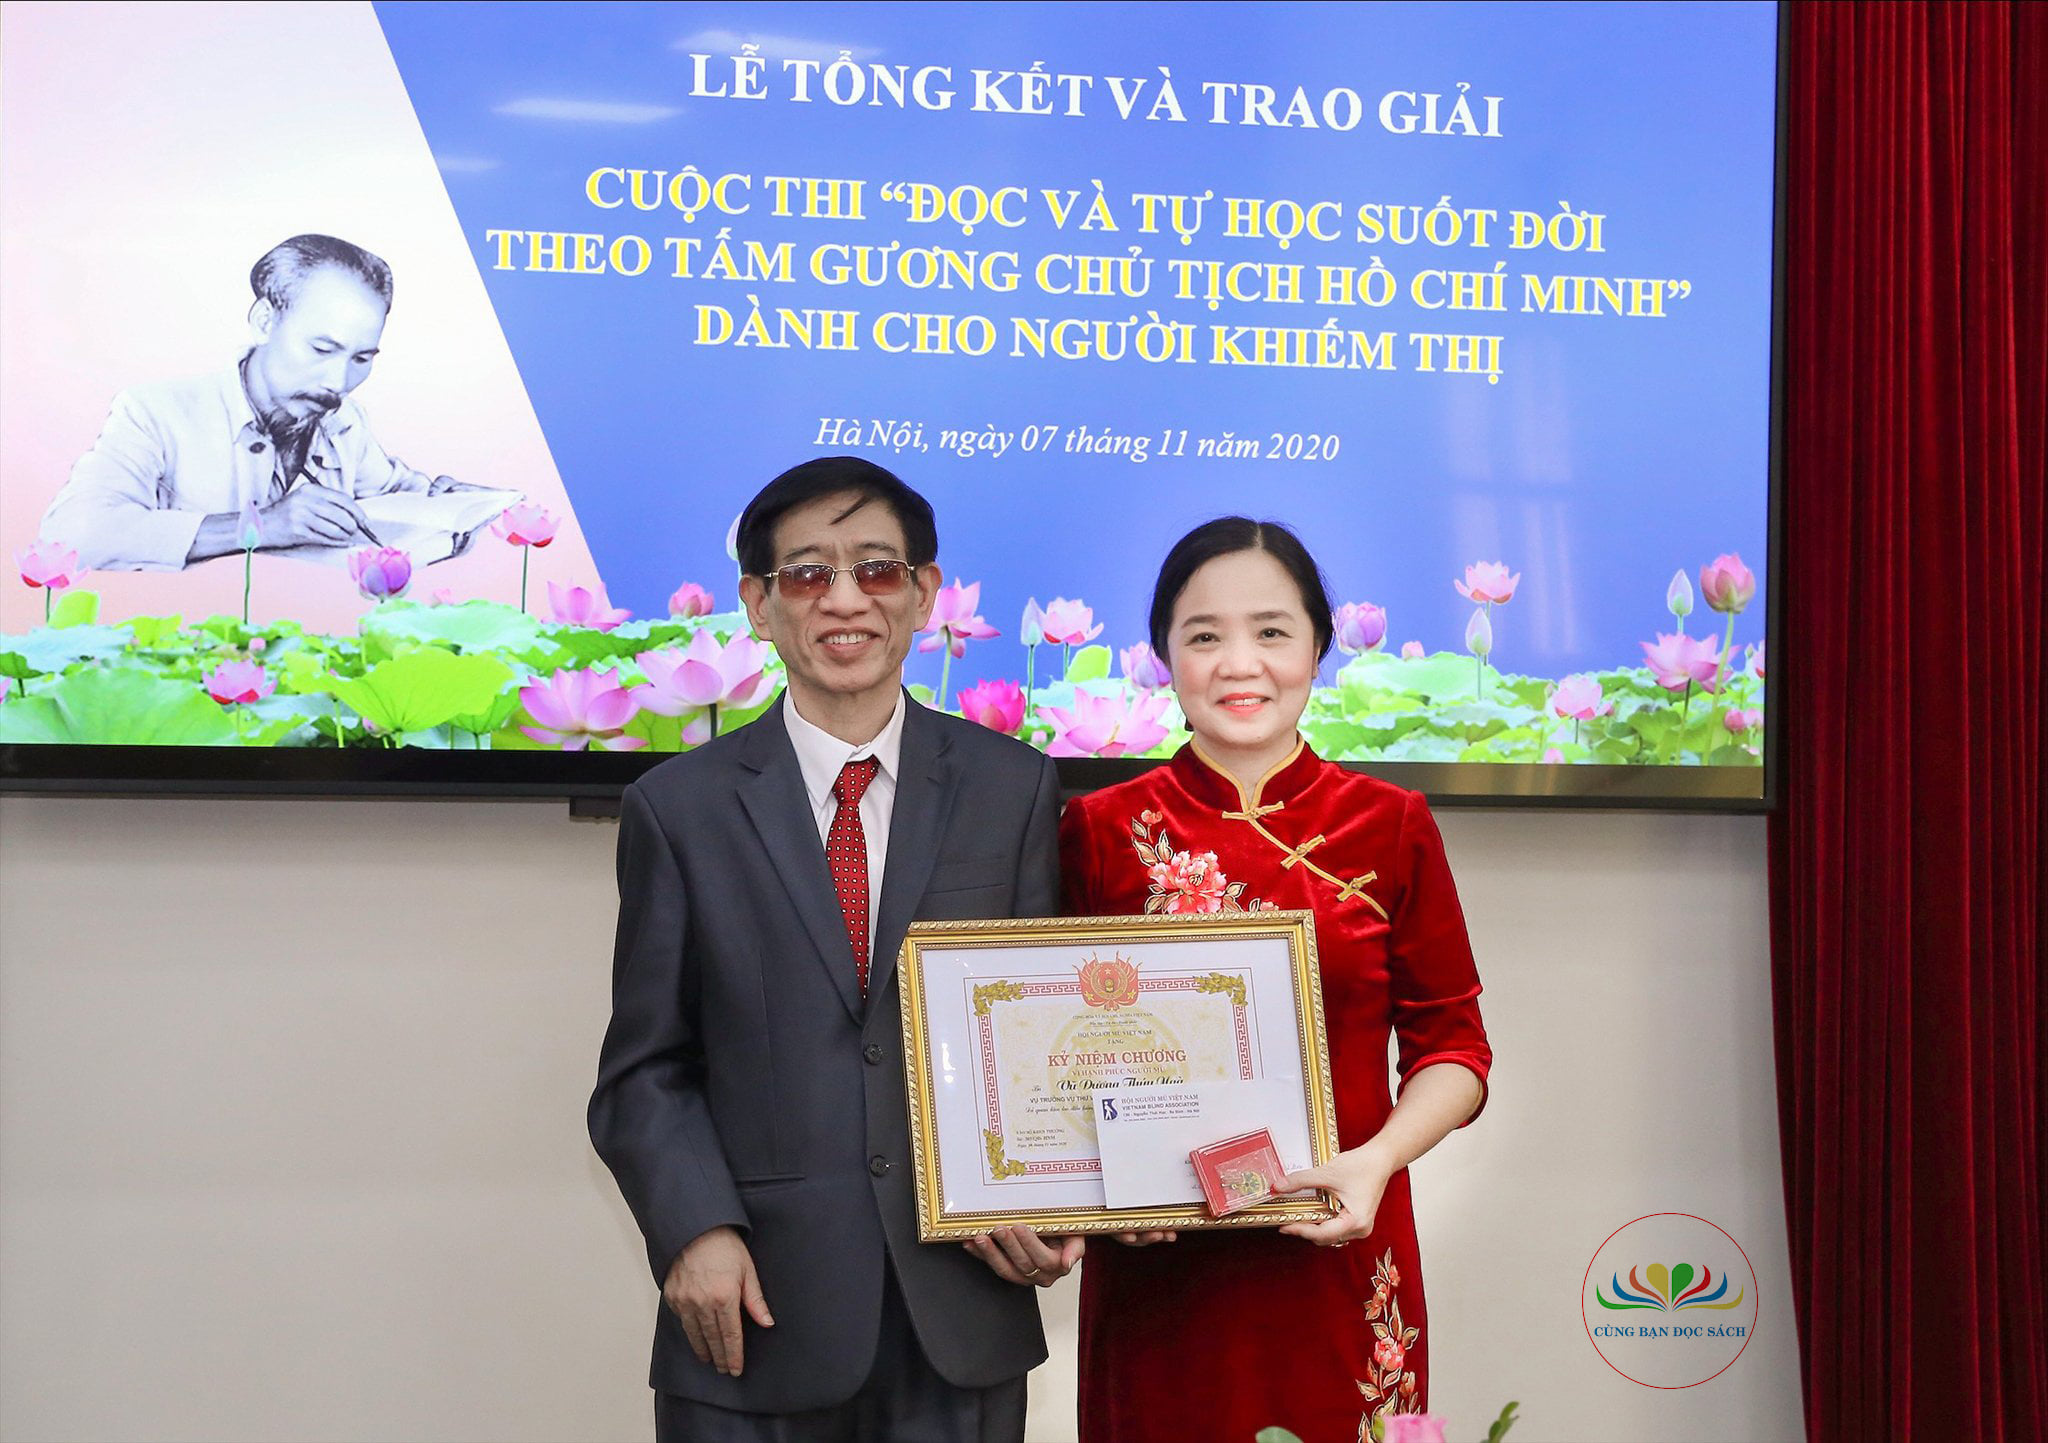 Lễ tổng kết và trao giải Cuộc thi “Đọc và tự học suốt đời theo tấm gương Chủ tịch Hồ Chí Minh” dành cho người khiếm thị